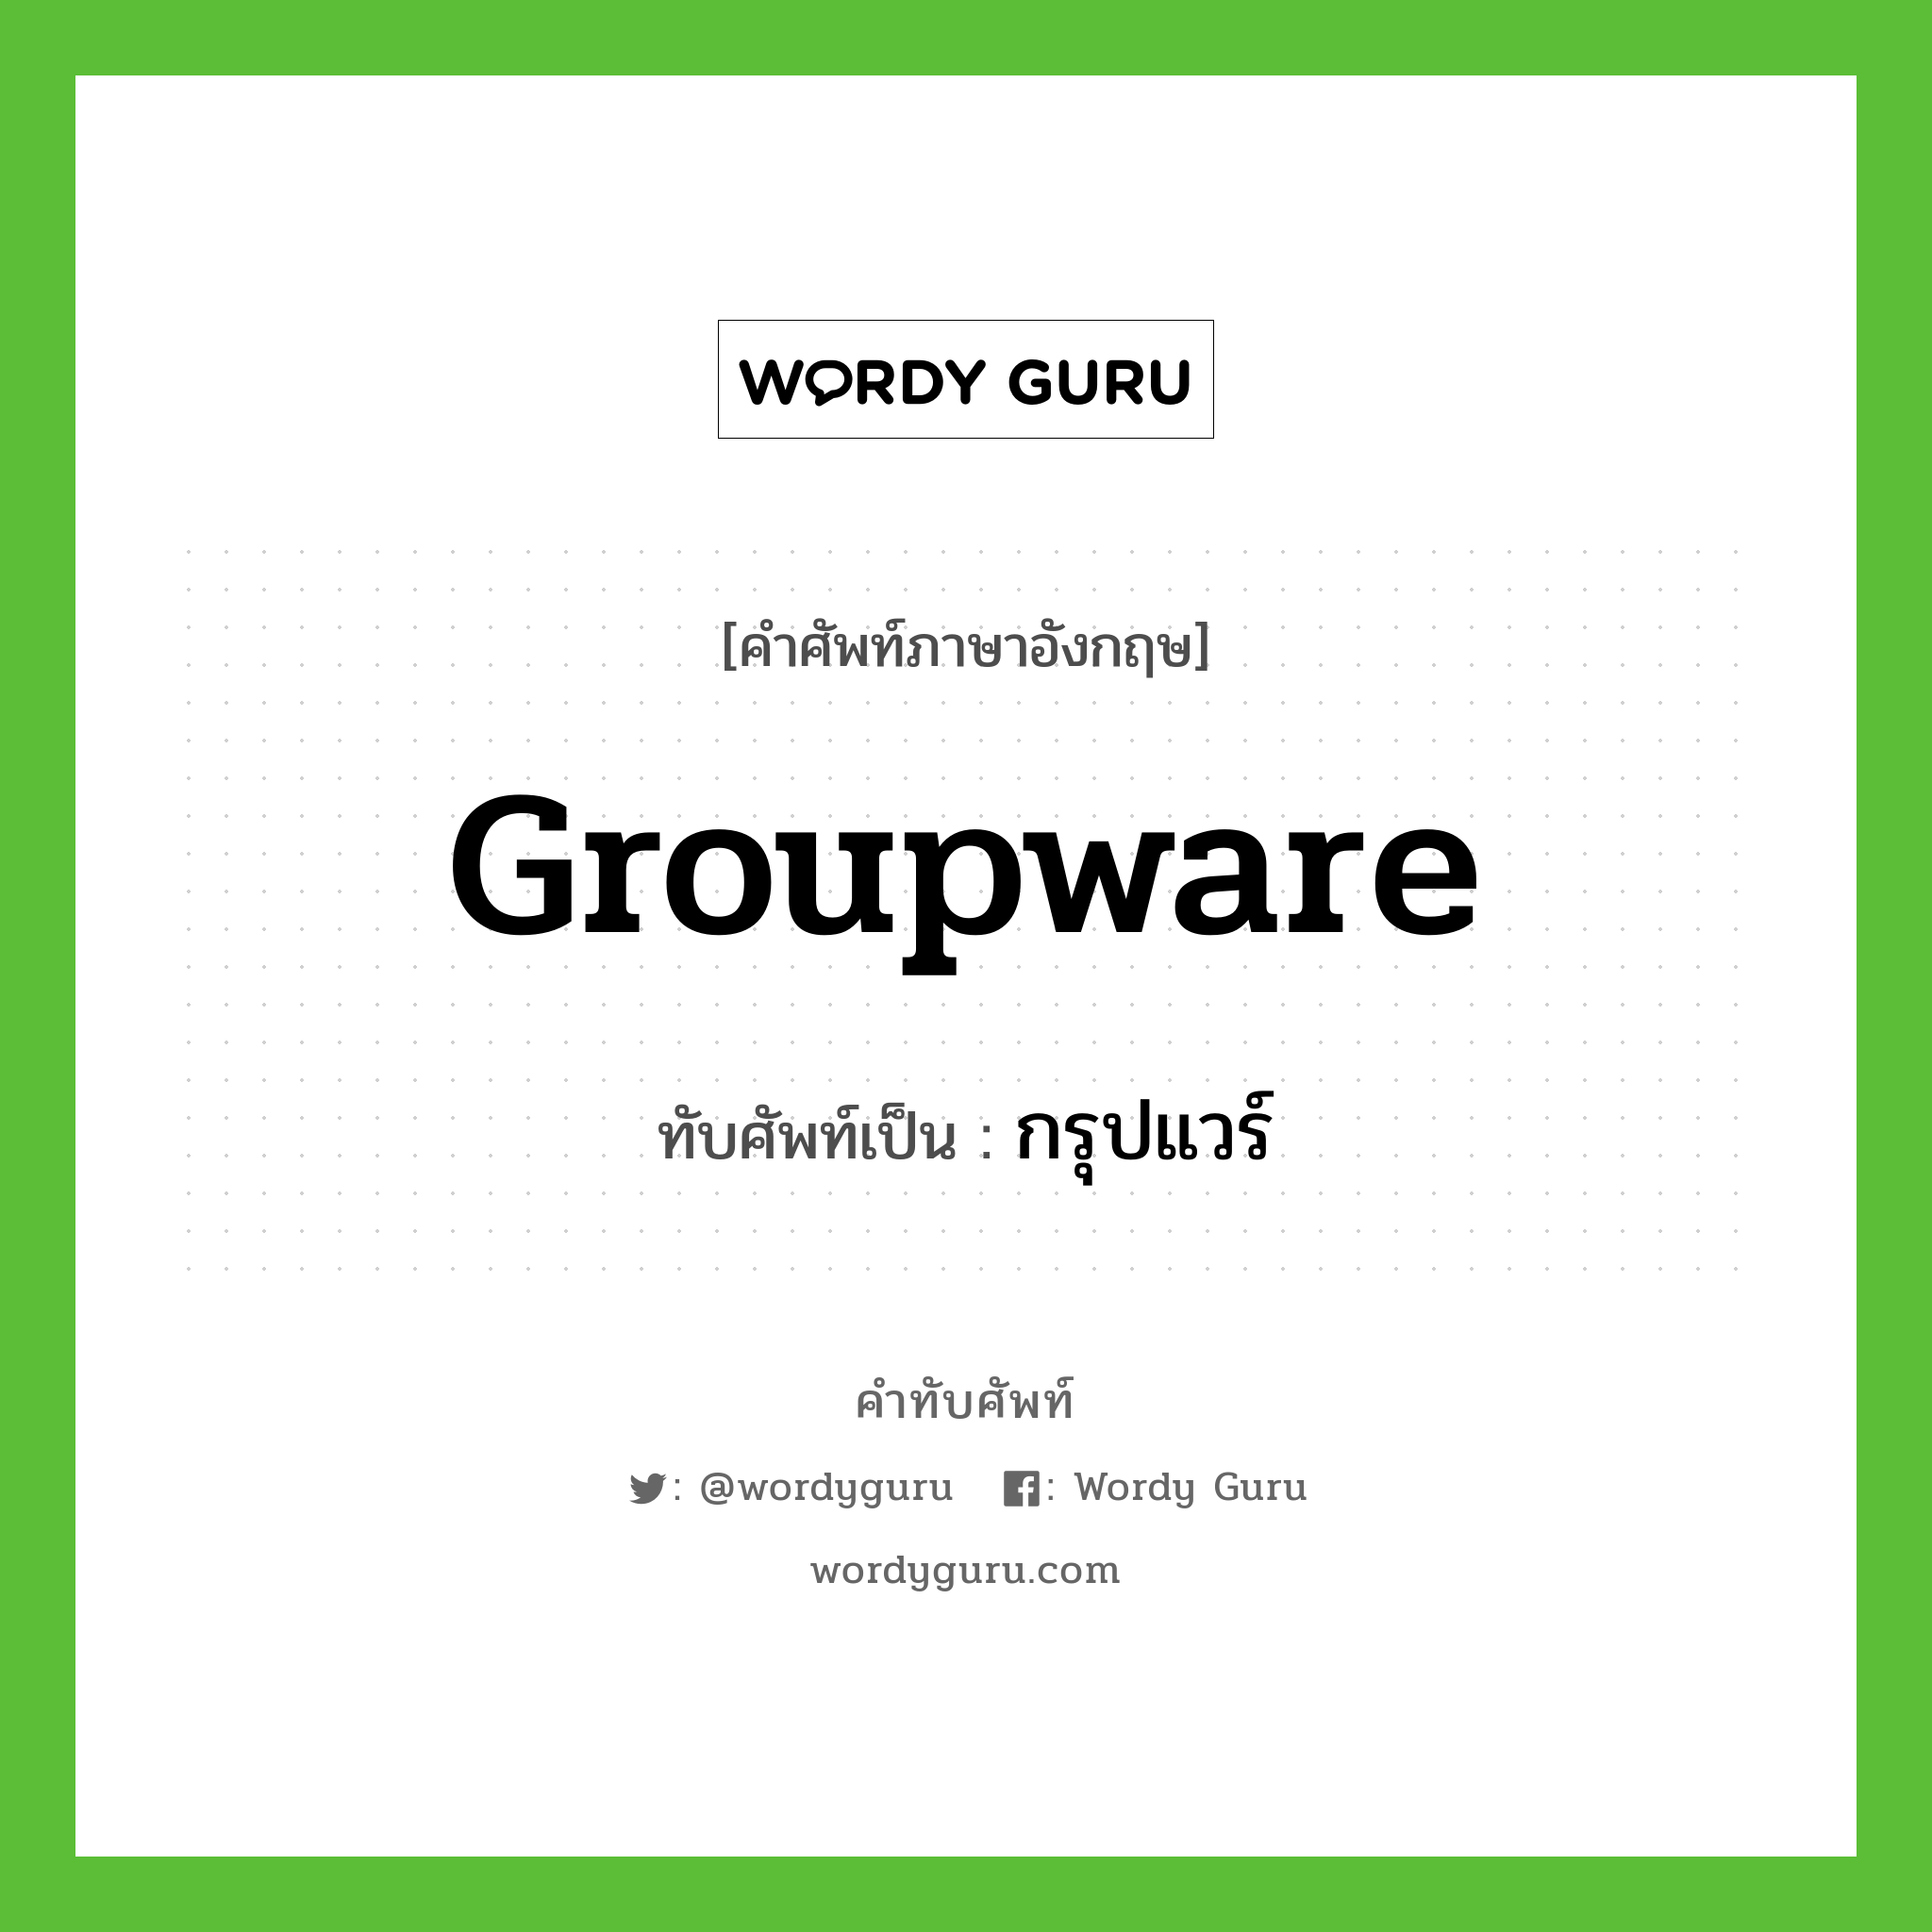 groupware เขียนเป็นคำไทยว่าอะไร?, คำศัพท์ภาษาอังกฤษ groupware ทับศัพท์เป็น กรุปแวร์